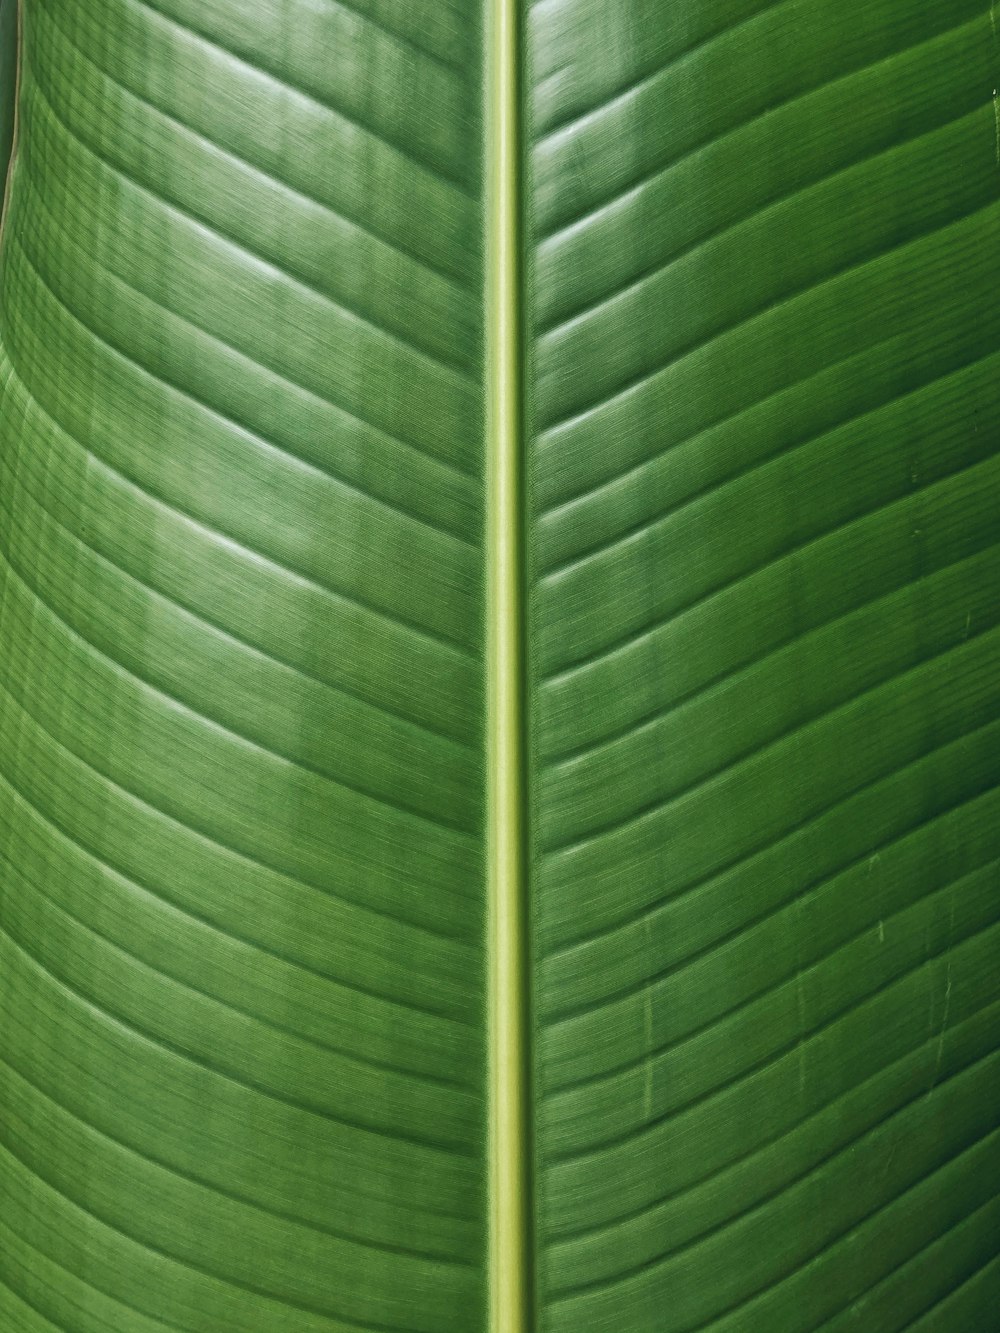 Details 200 high resolution banana leaf background